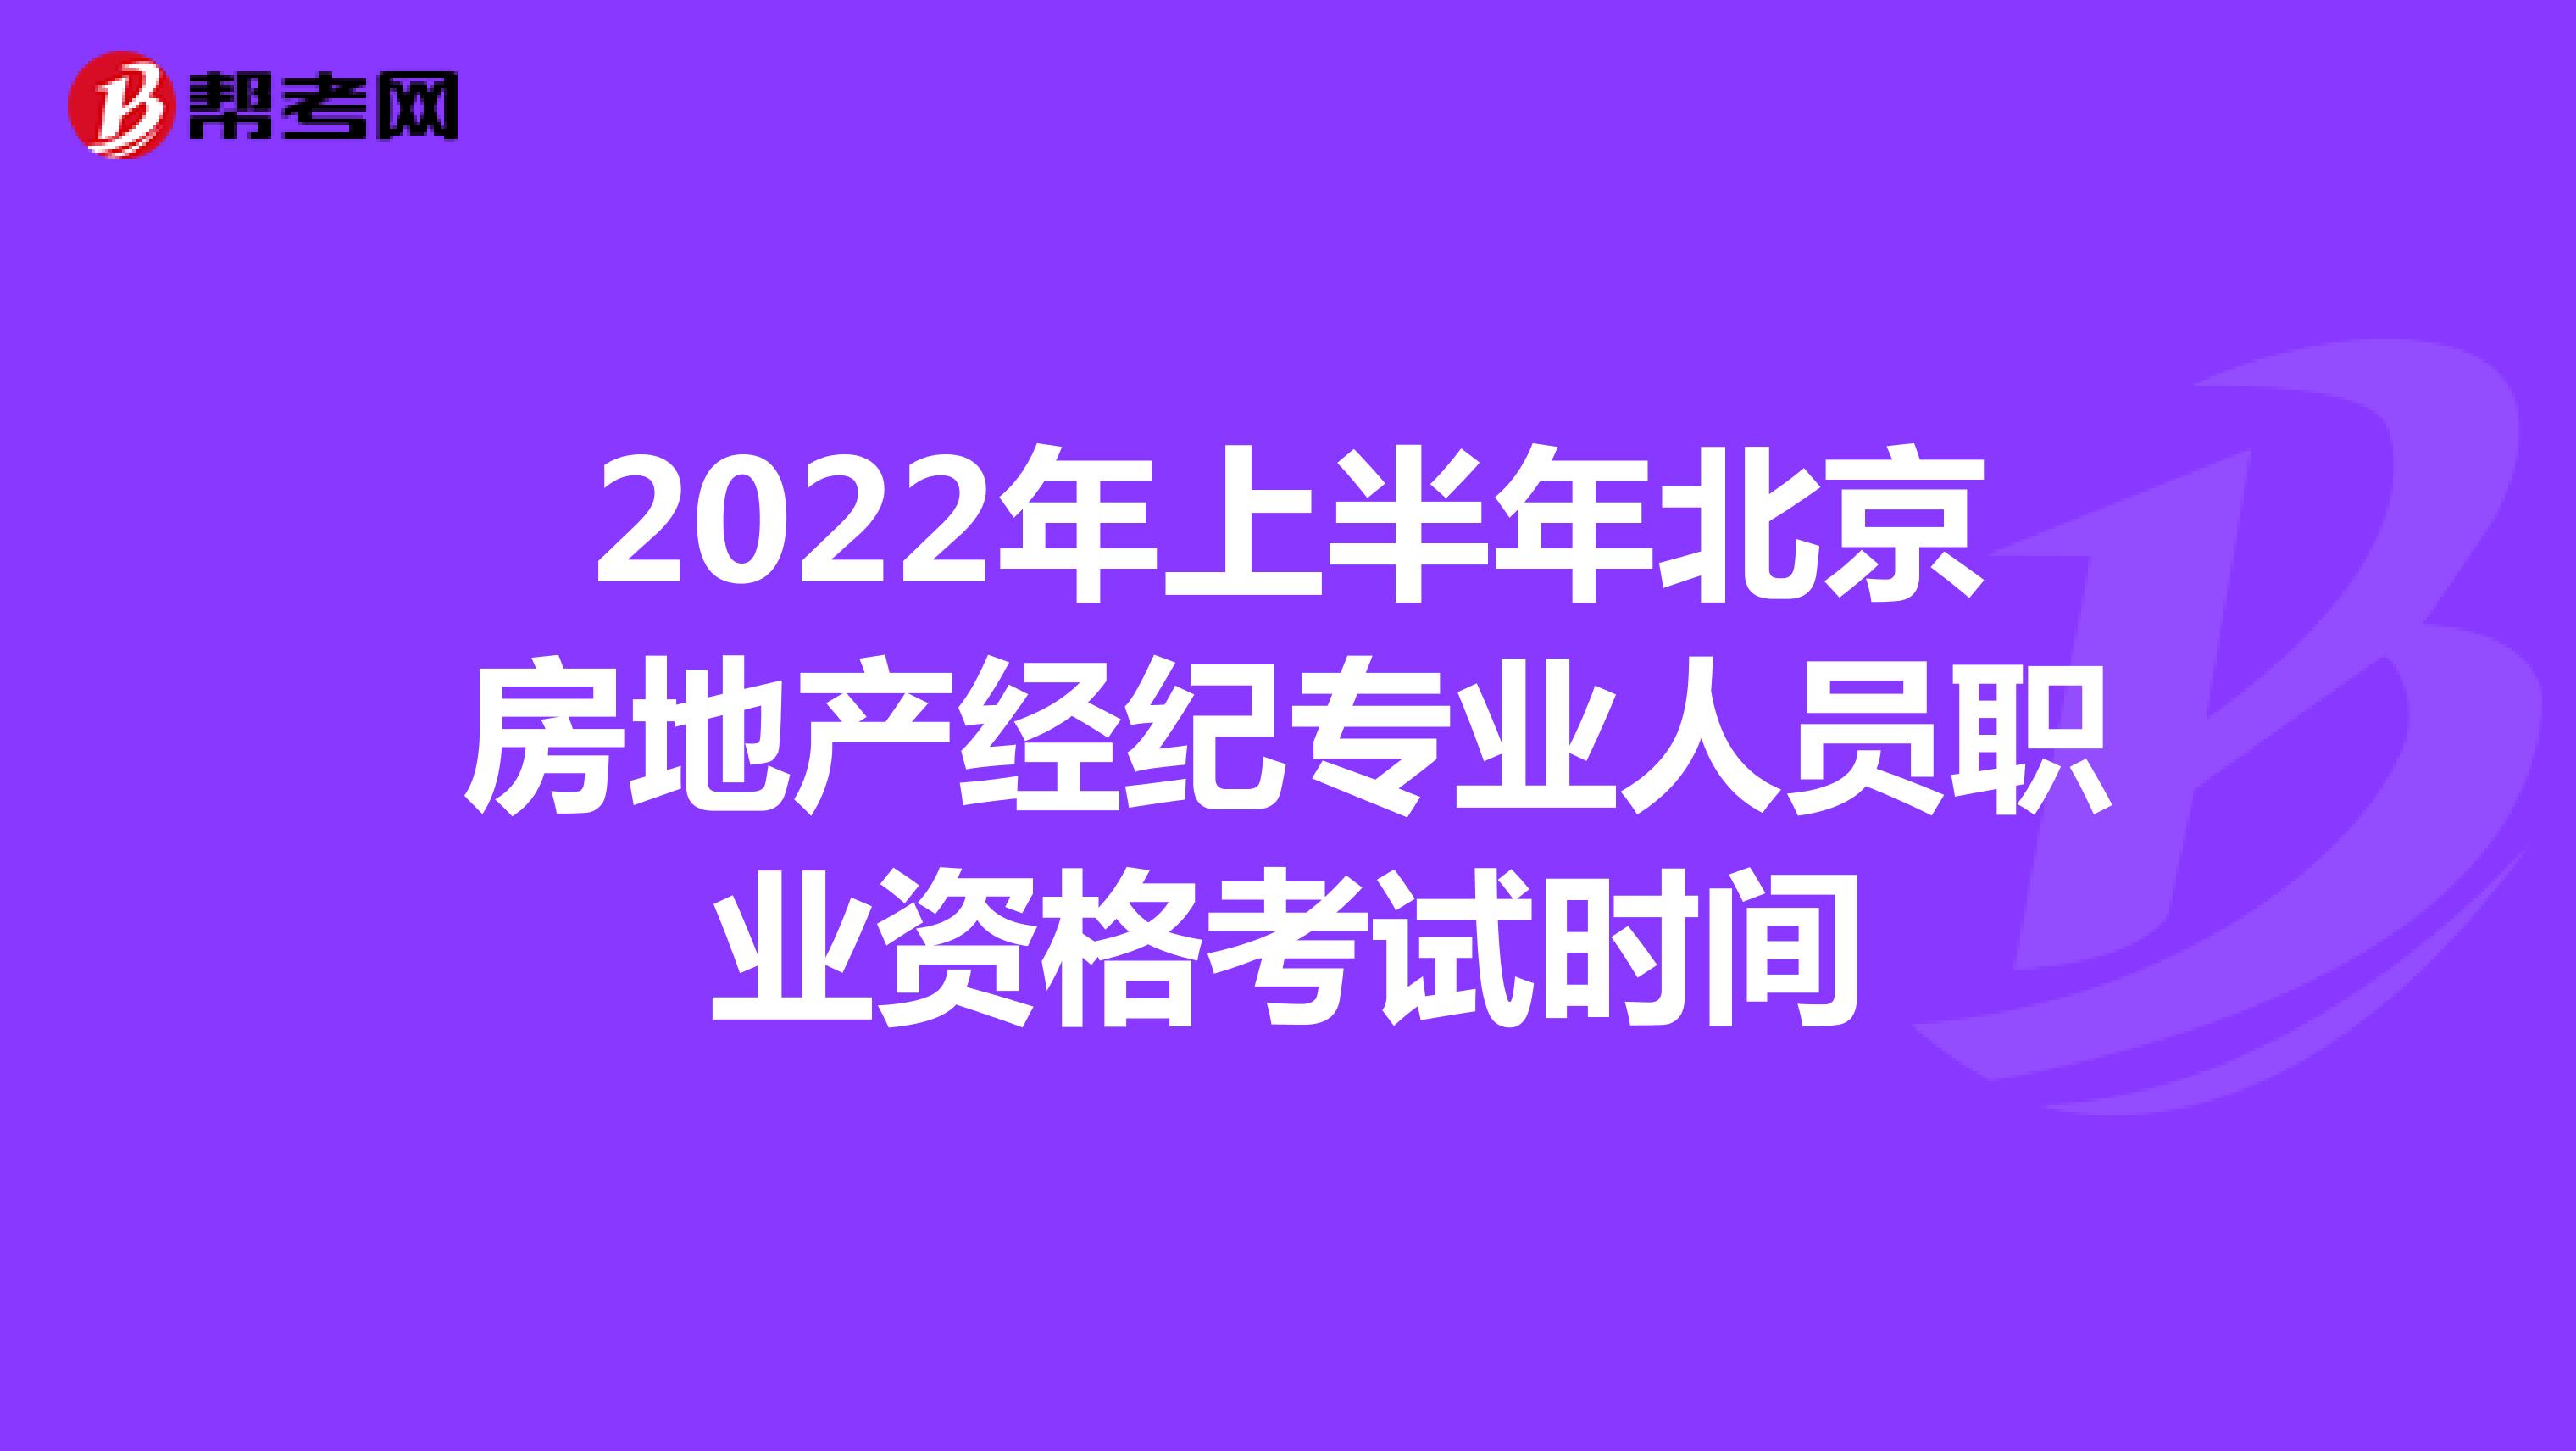 2022年上半年北京房地产经纪专业人员职业资格考试时间